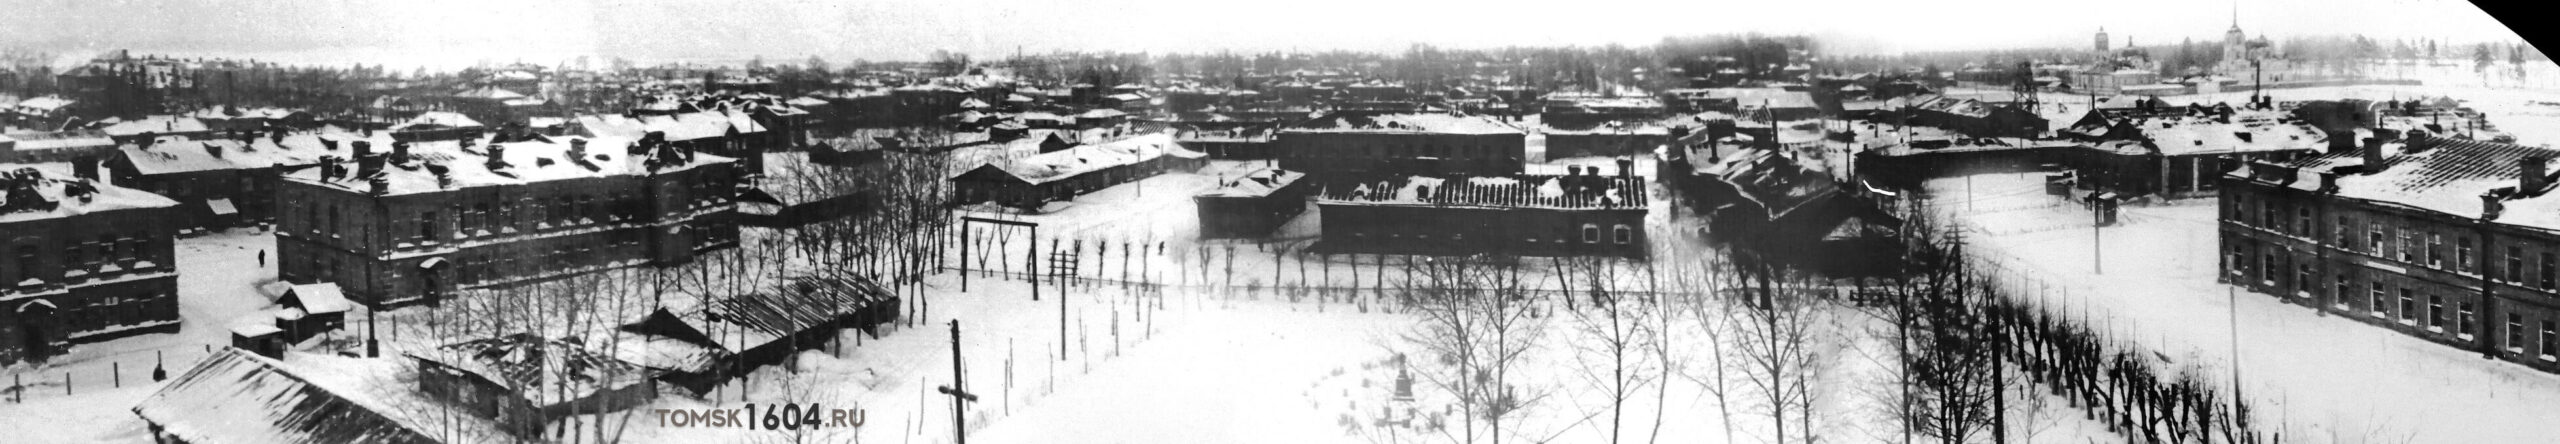 Панорама строений военного городка. Автор неизвестен. Первая половина XX века.